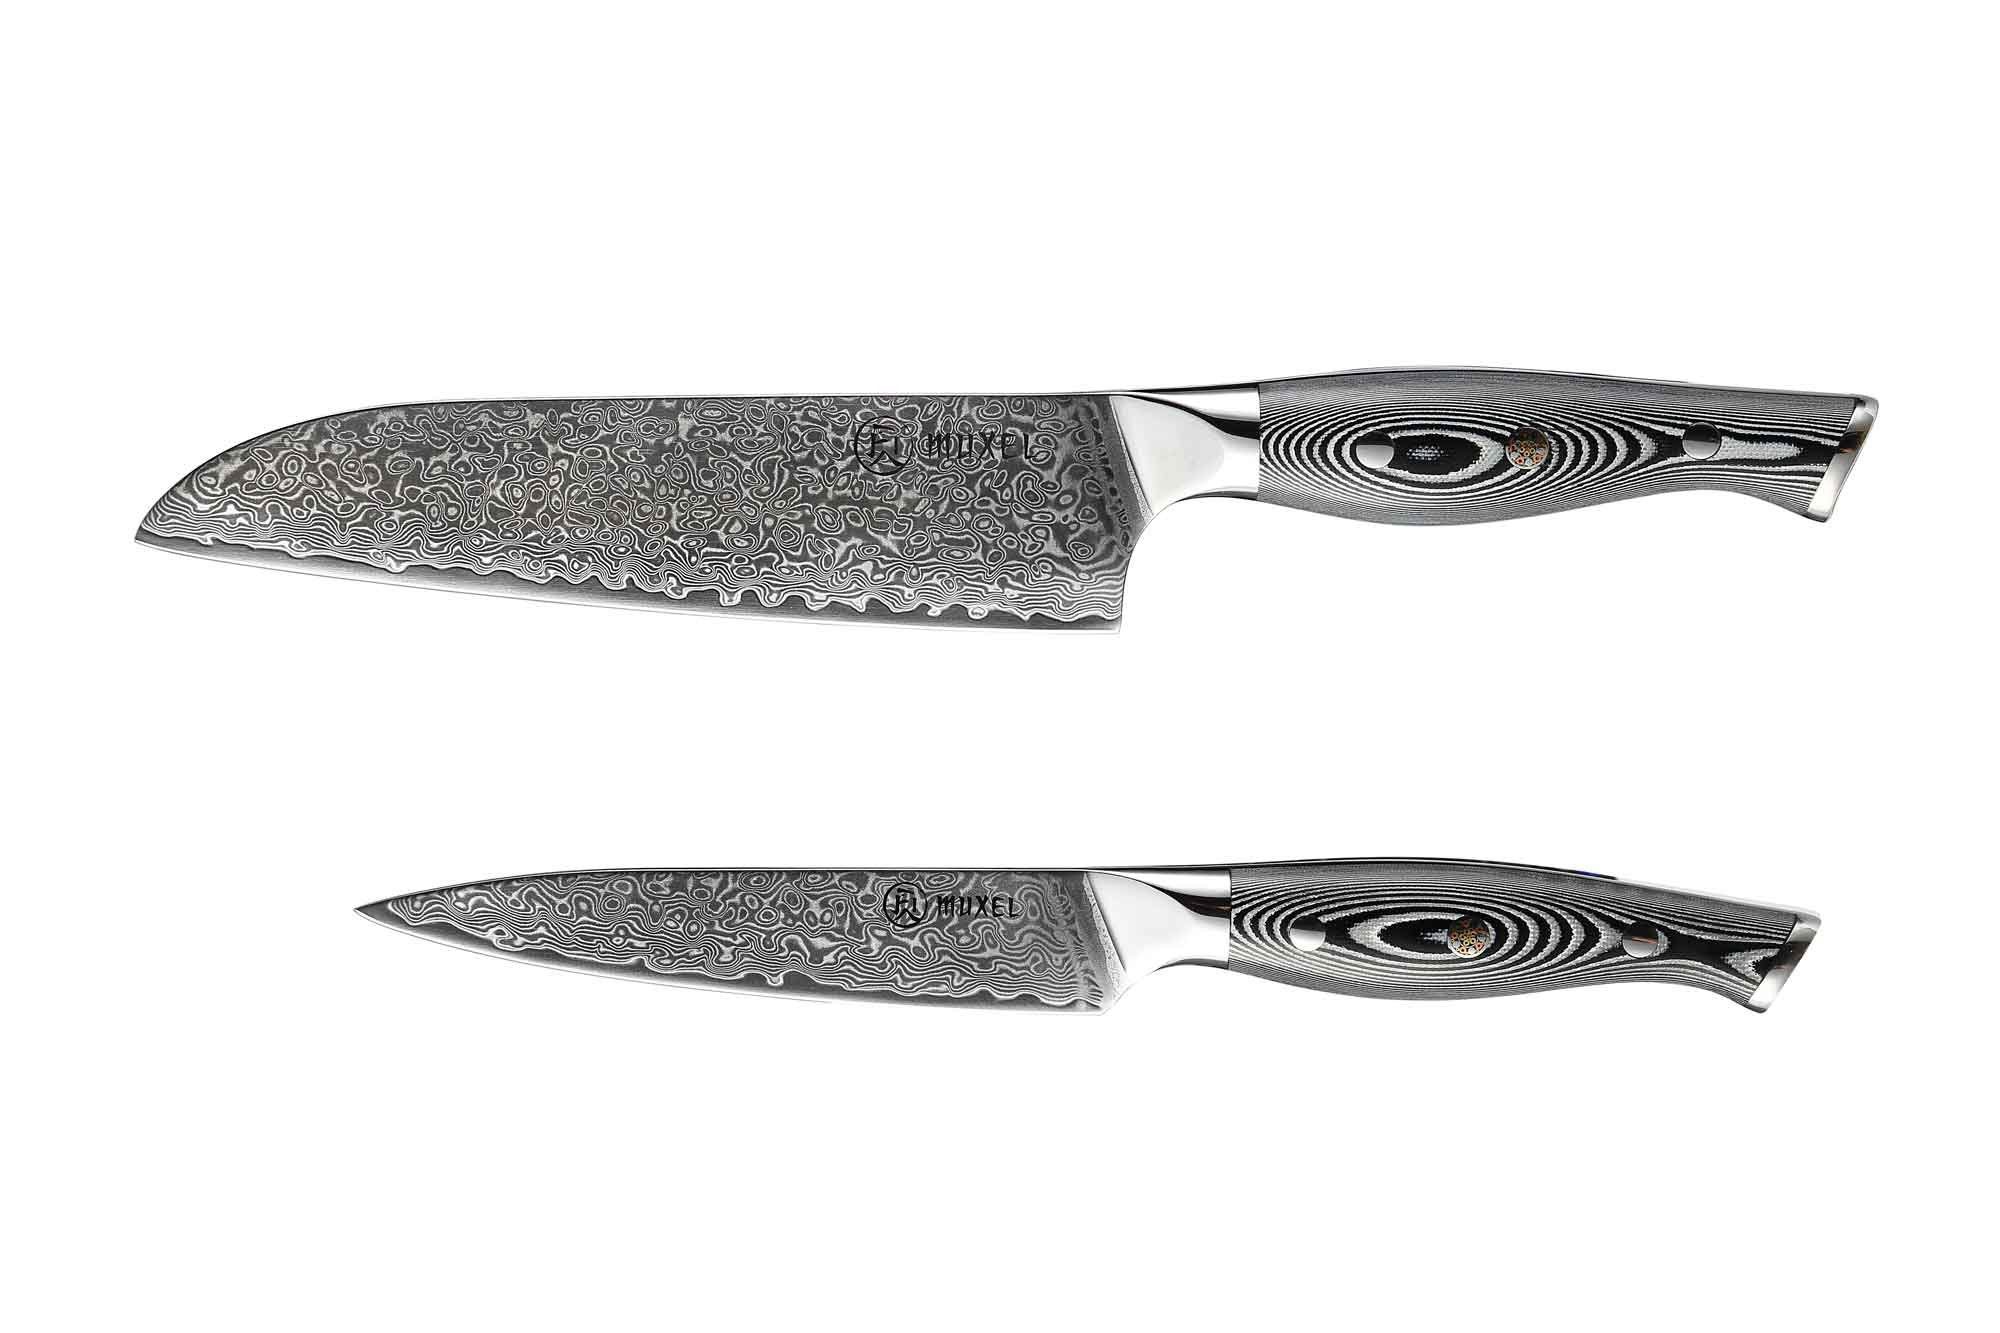 Muxel Ausbeinmesser 2-tlg Messer Set Damast V10 Edelstahl 62 Lagen